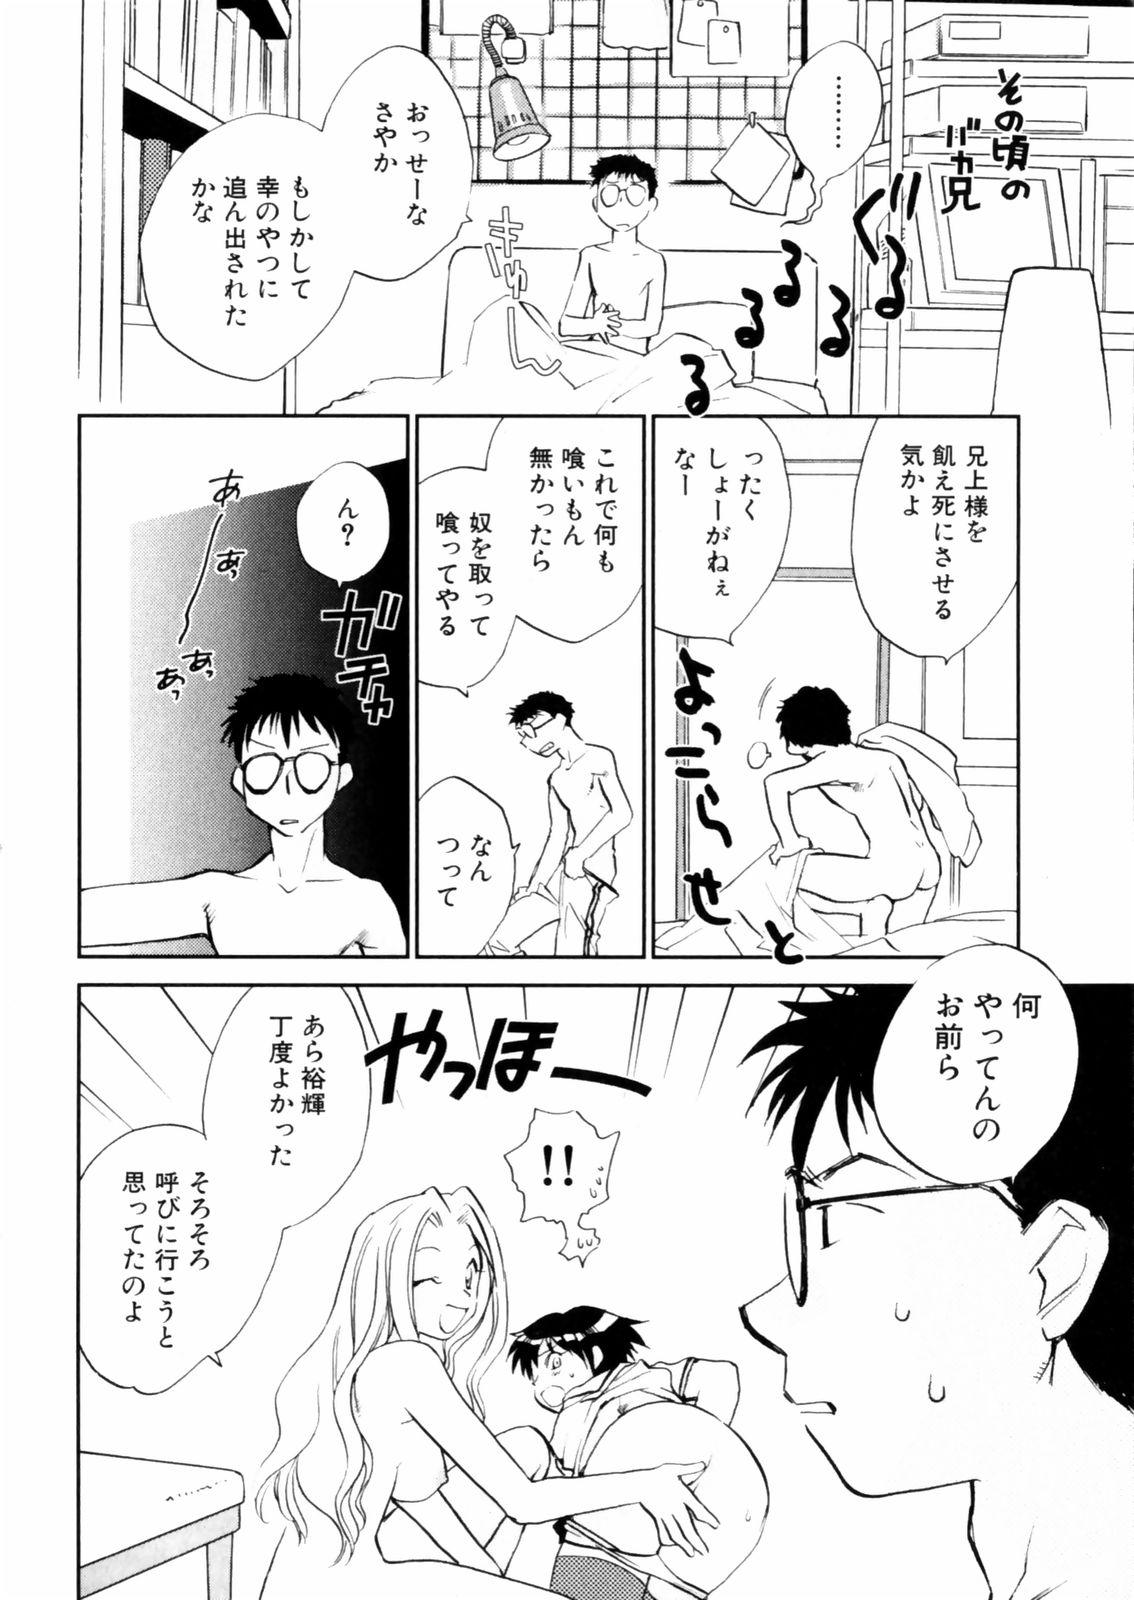 [Okano Ahiru] Hanasake ! Otome Juku (Otome Private Tutoring School) Vol.2 147